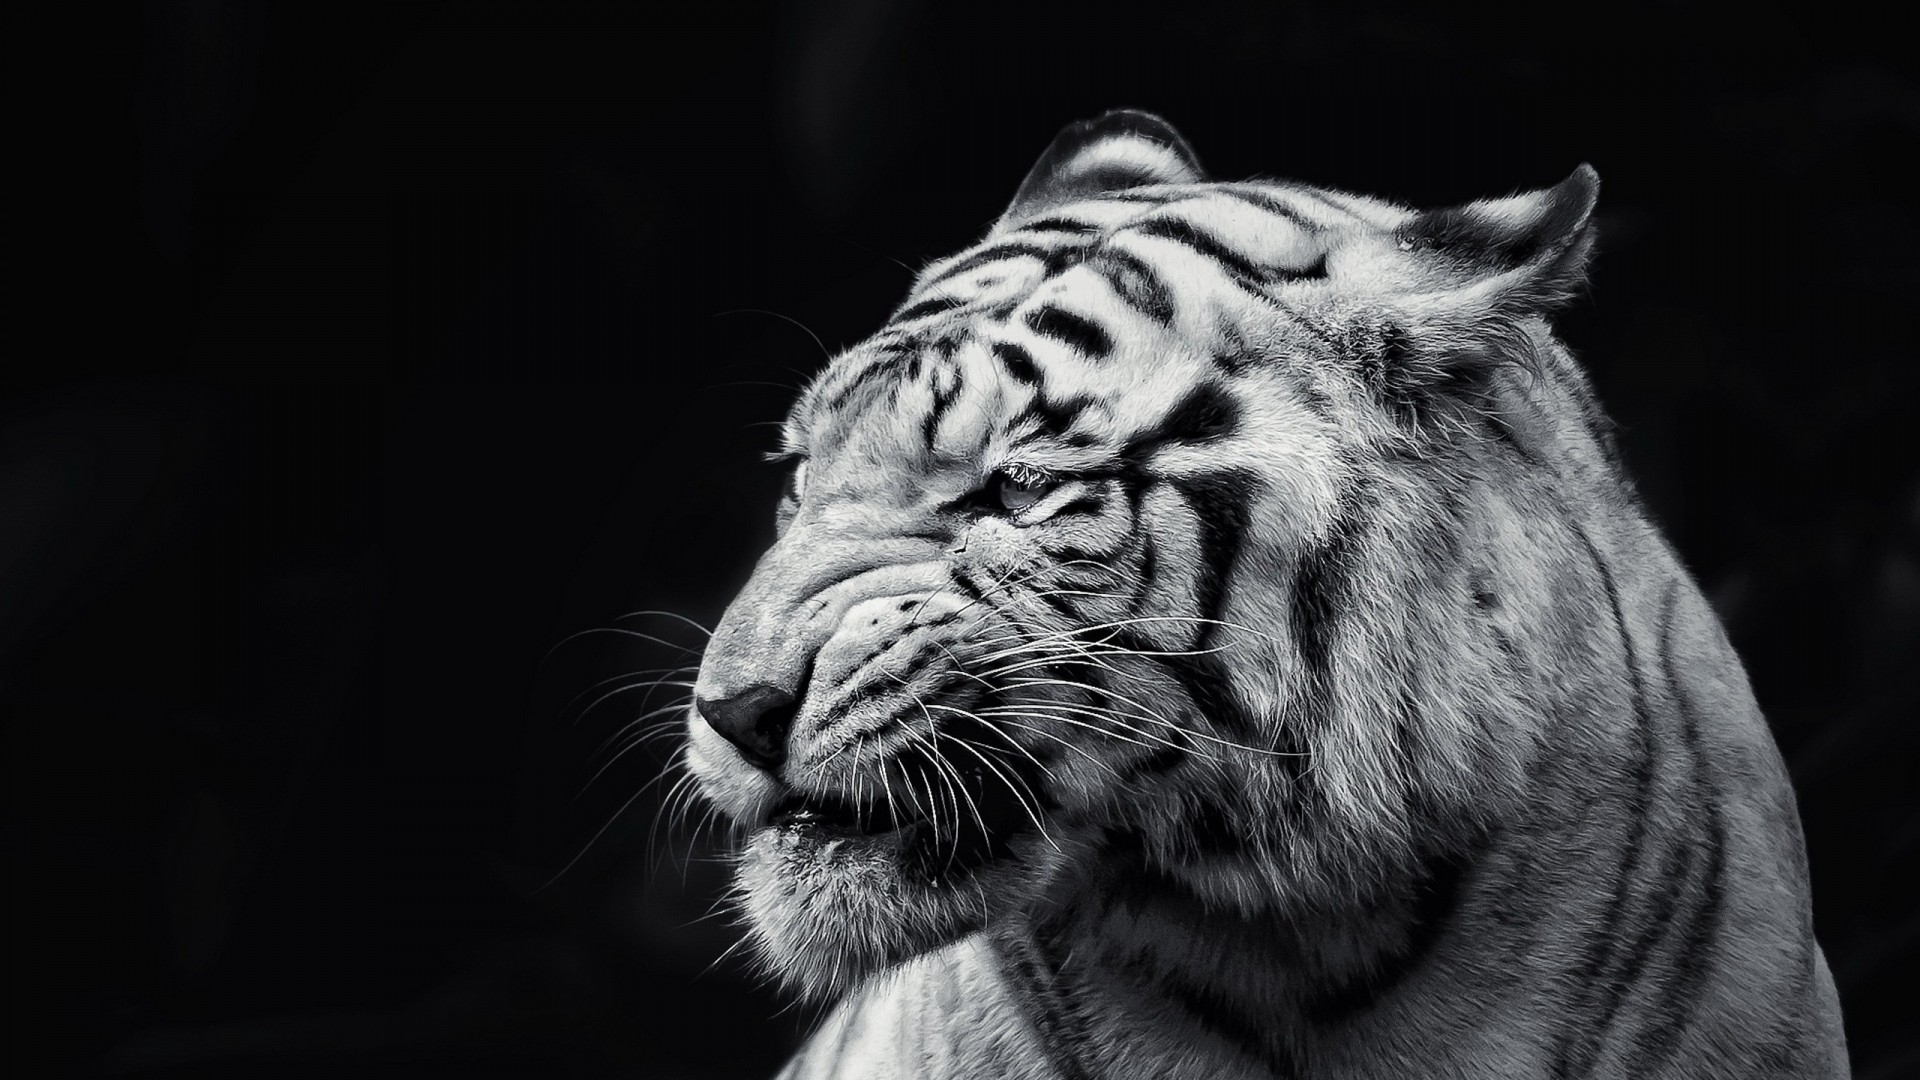 white tiger hd wallpapers 1080p,tiger,vertebrate,wildlife,bengal tiger,white